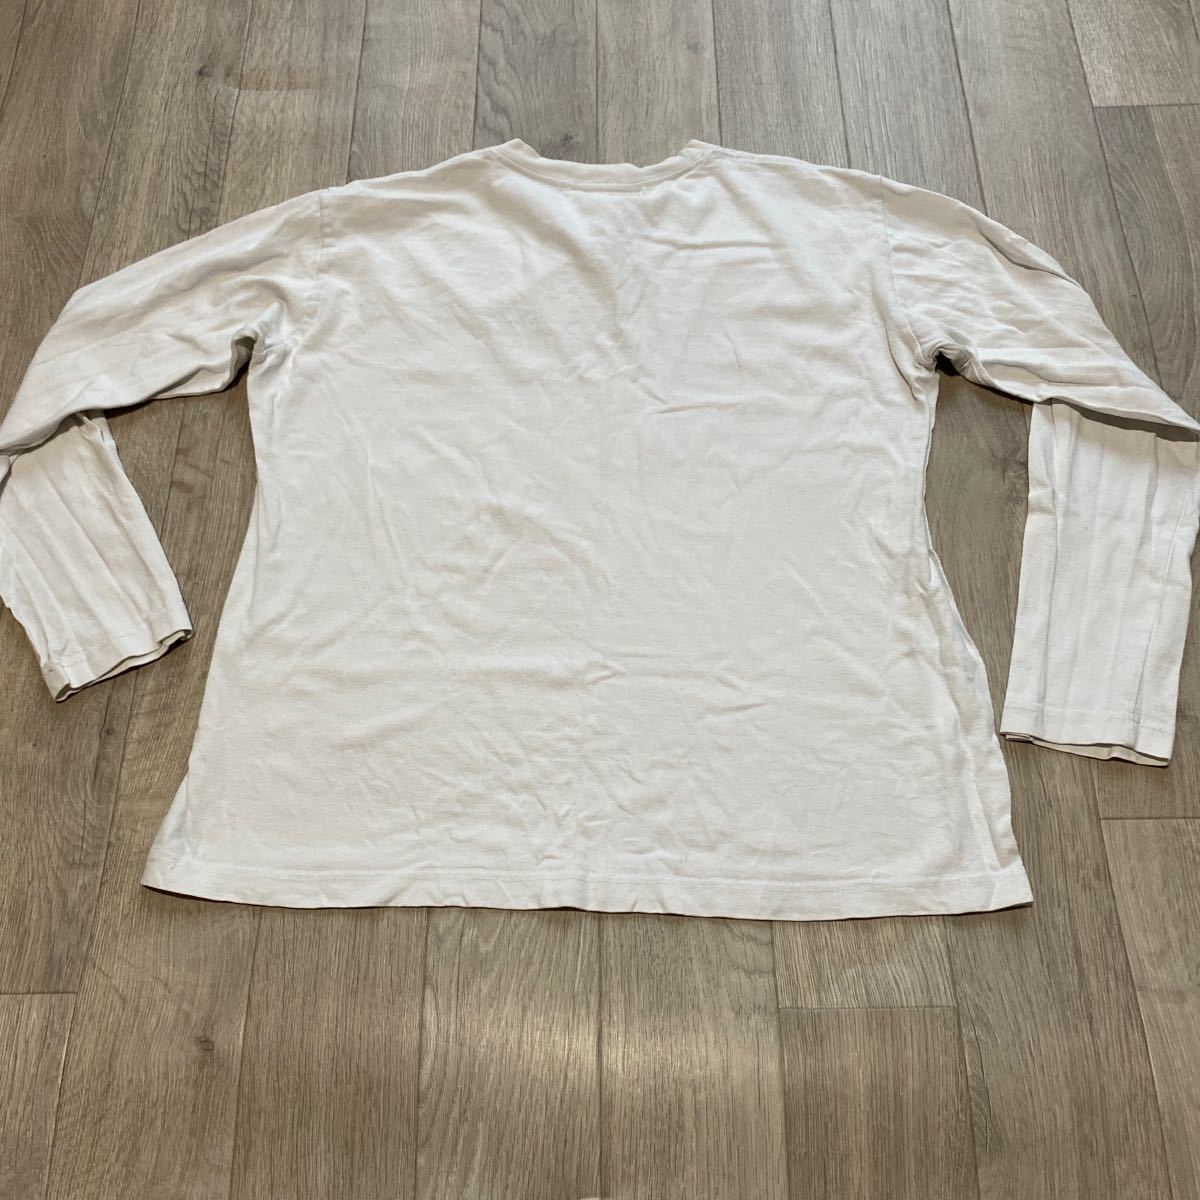  бесплатная доставка б/у одежда футболка с длинным рукавом [KREVA совершенно 1 человек Tour 2018] M размер 